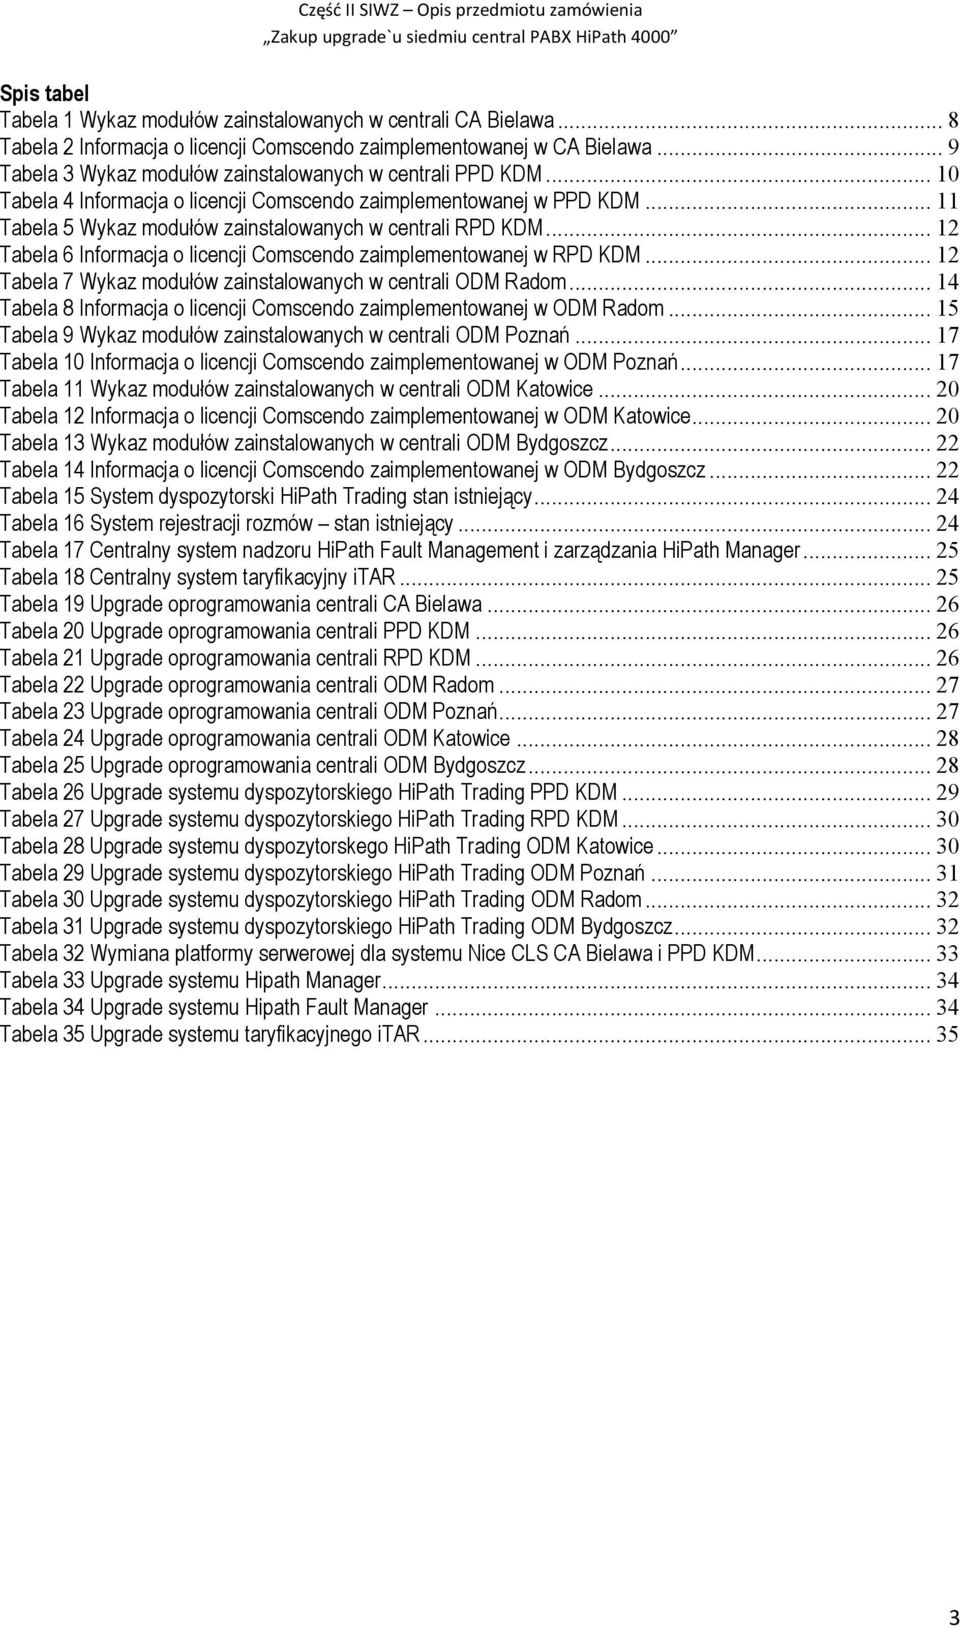 .. 2 Tabela 6 Informacja o licencji Comscendo zaimplementowanej w RPD KDM... 2 Tabela 7 Wykaz modułów zainstalowanych w centrali ODM Radom.